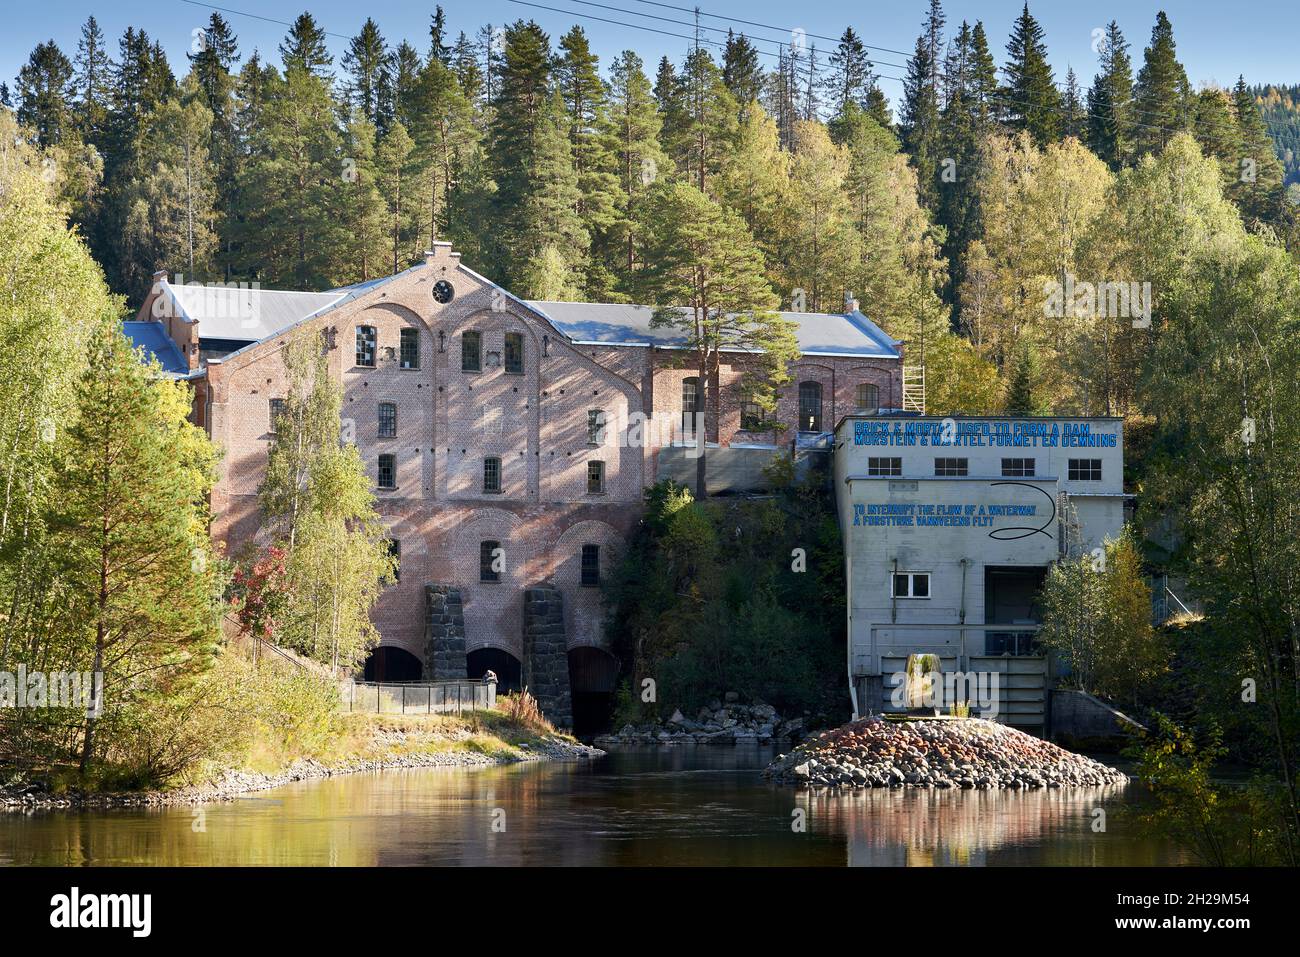 JEVNAKER, NORWEGEN - 25. Sep 2021: Das Industriemuseum der Kistefos Holzscheibmühle an einem von Bäumen umgebenen Flussufer in Jevnaker, Norwegen Stockfoto